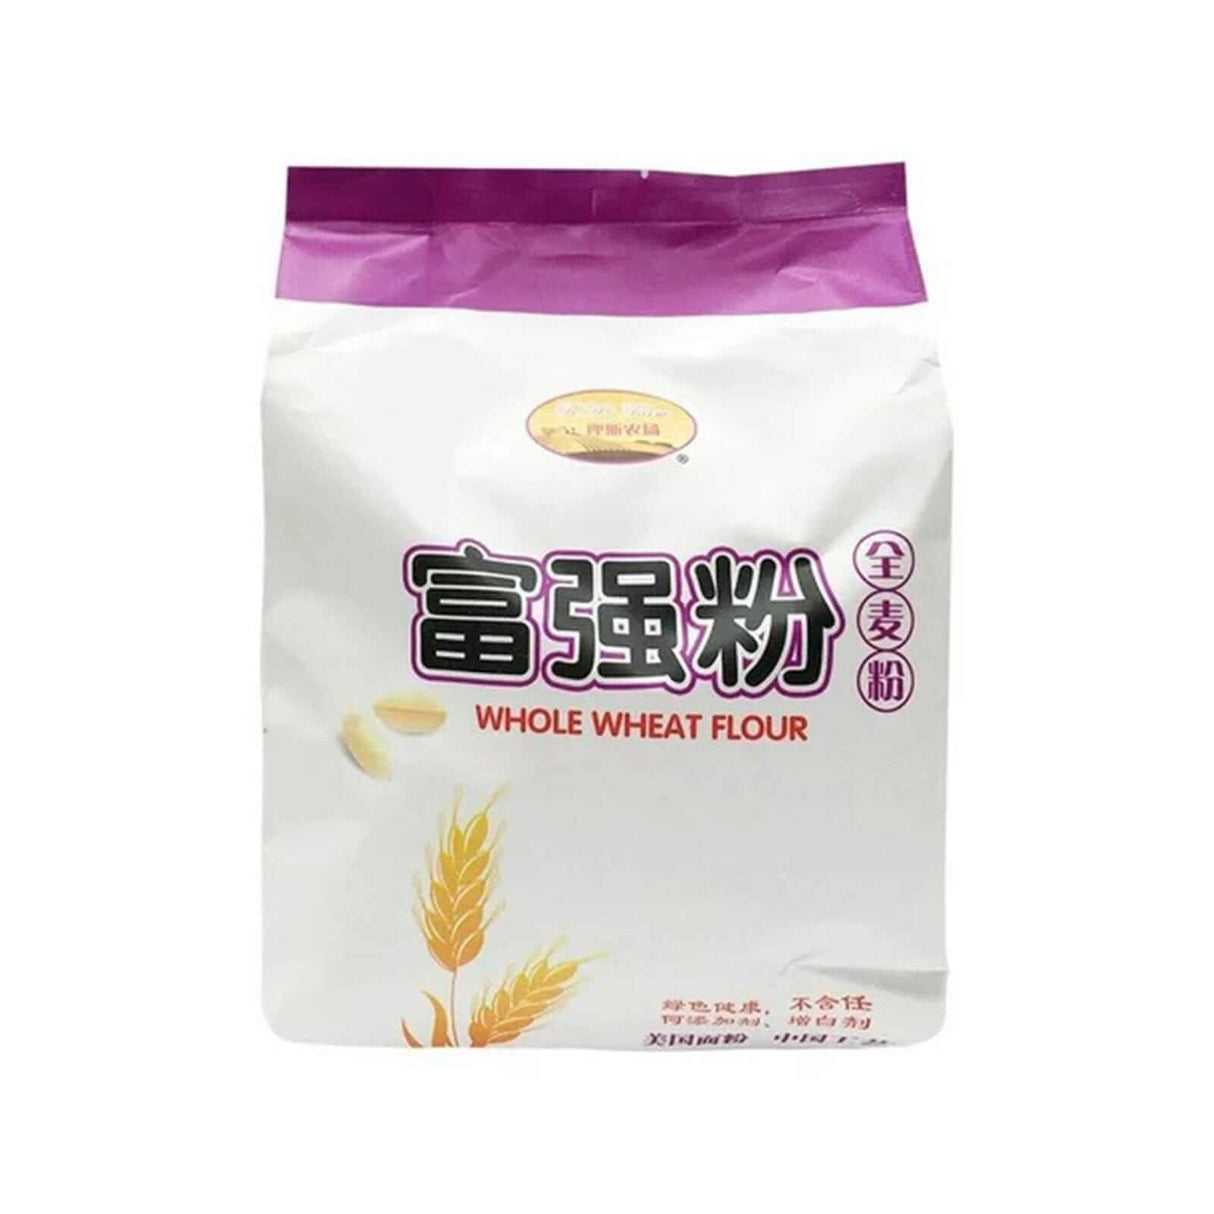 RA's Farm Whole Wheat Flour